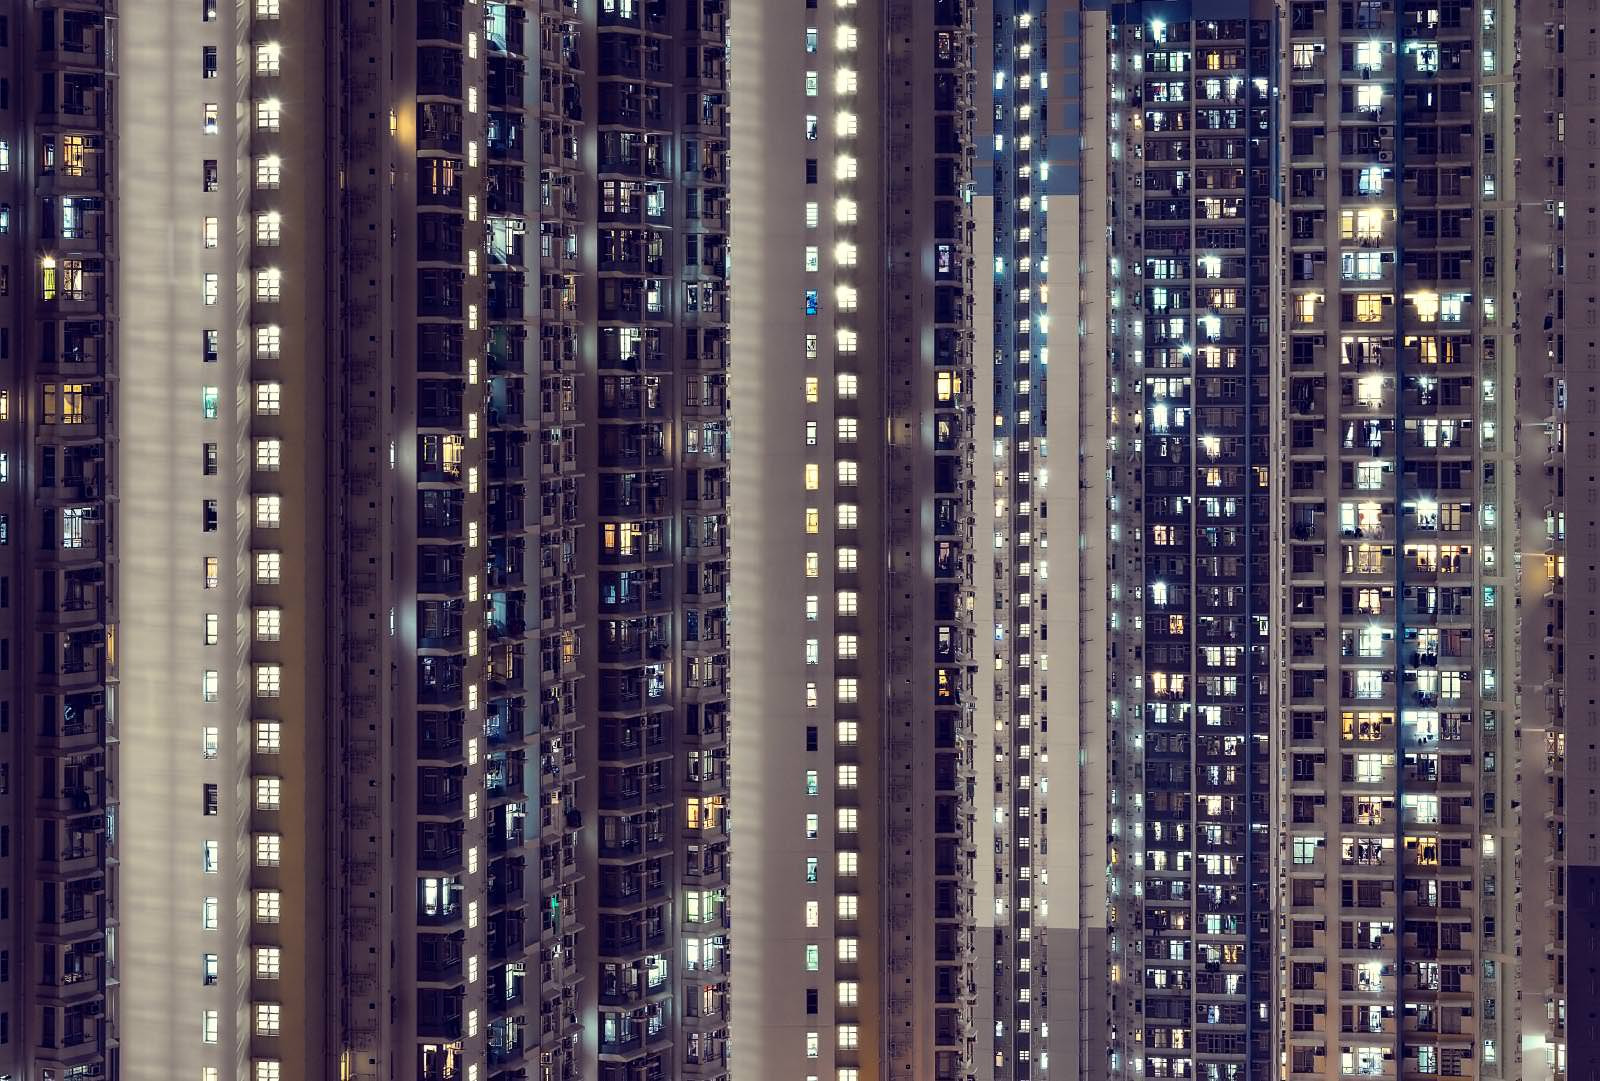 Nachtaufnahme aus Hong Kong mit vielen leuchten Fenstern